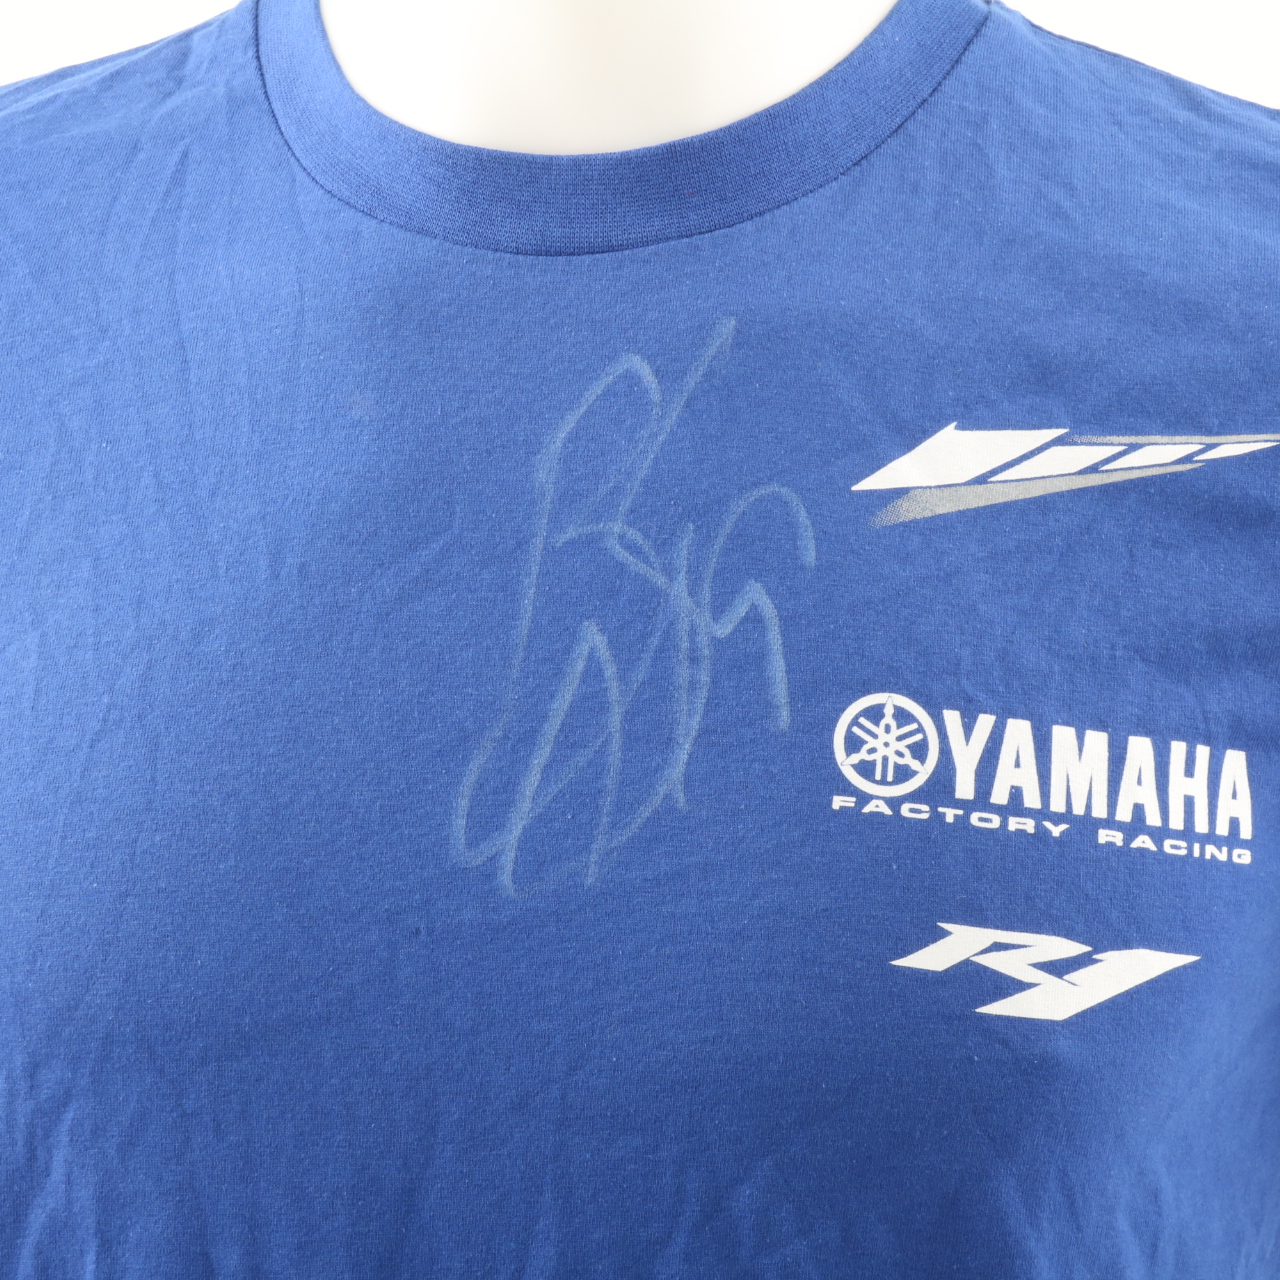 Maglia ufficiale Yamaha, autografata da Ben Spies - CharityStars